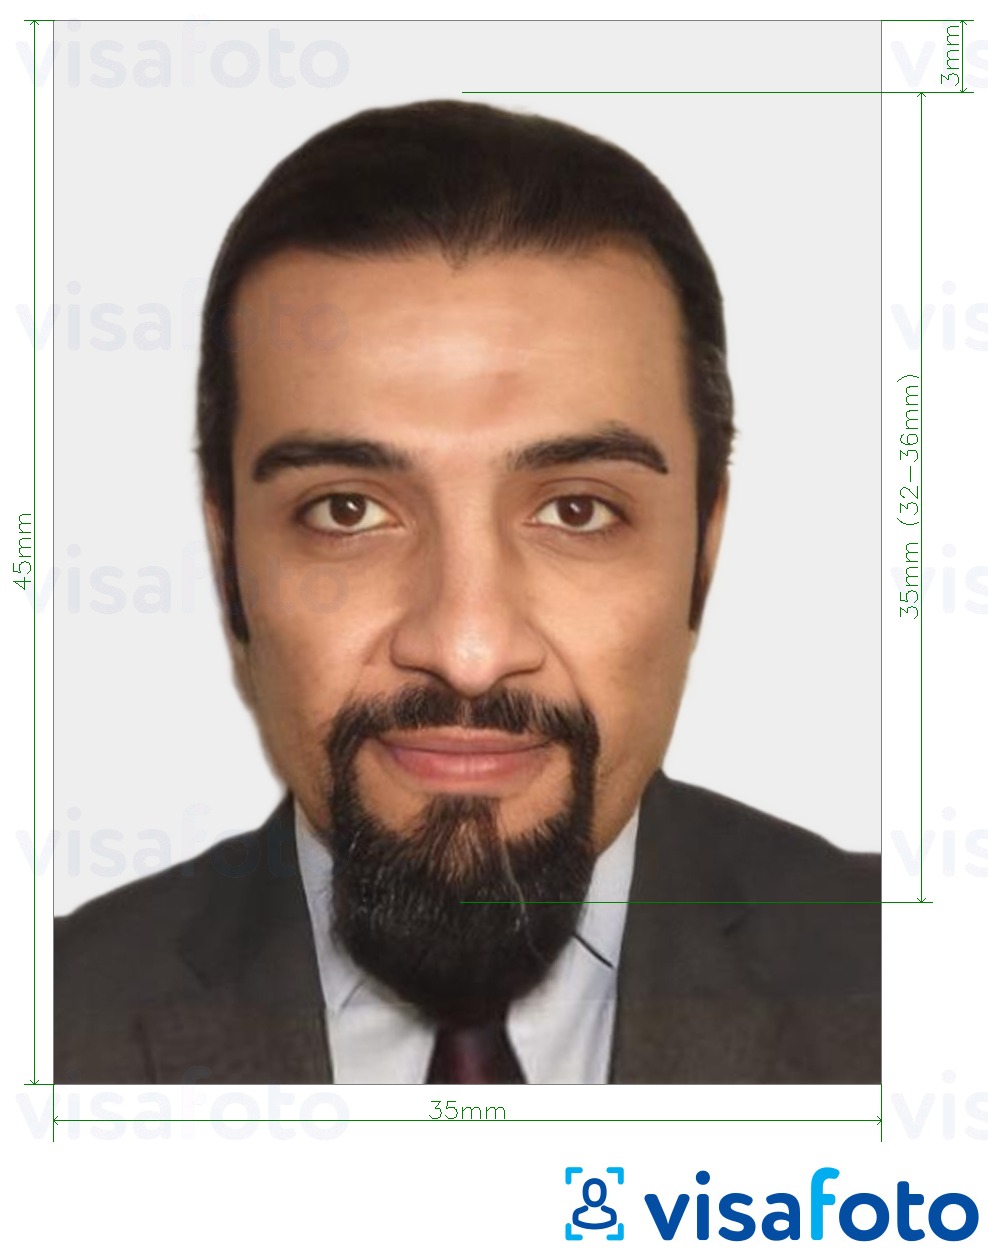 نمونه ی یک عکس برای پاسپورت مراکش 35x45 میلی متر (3.5x4.5 سانتی متر) با مشخصات دقیق